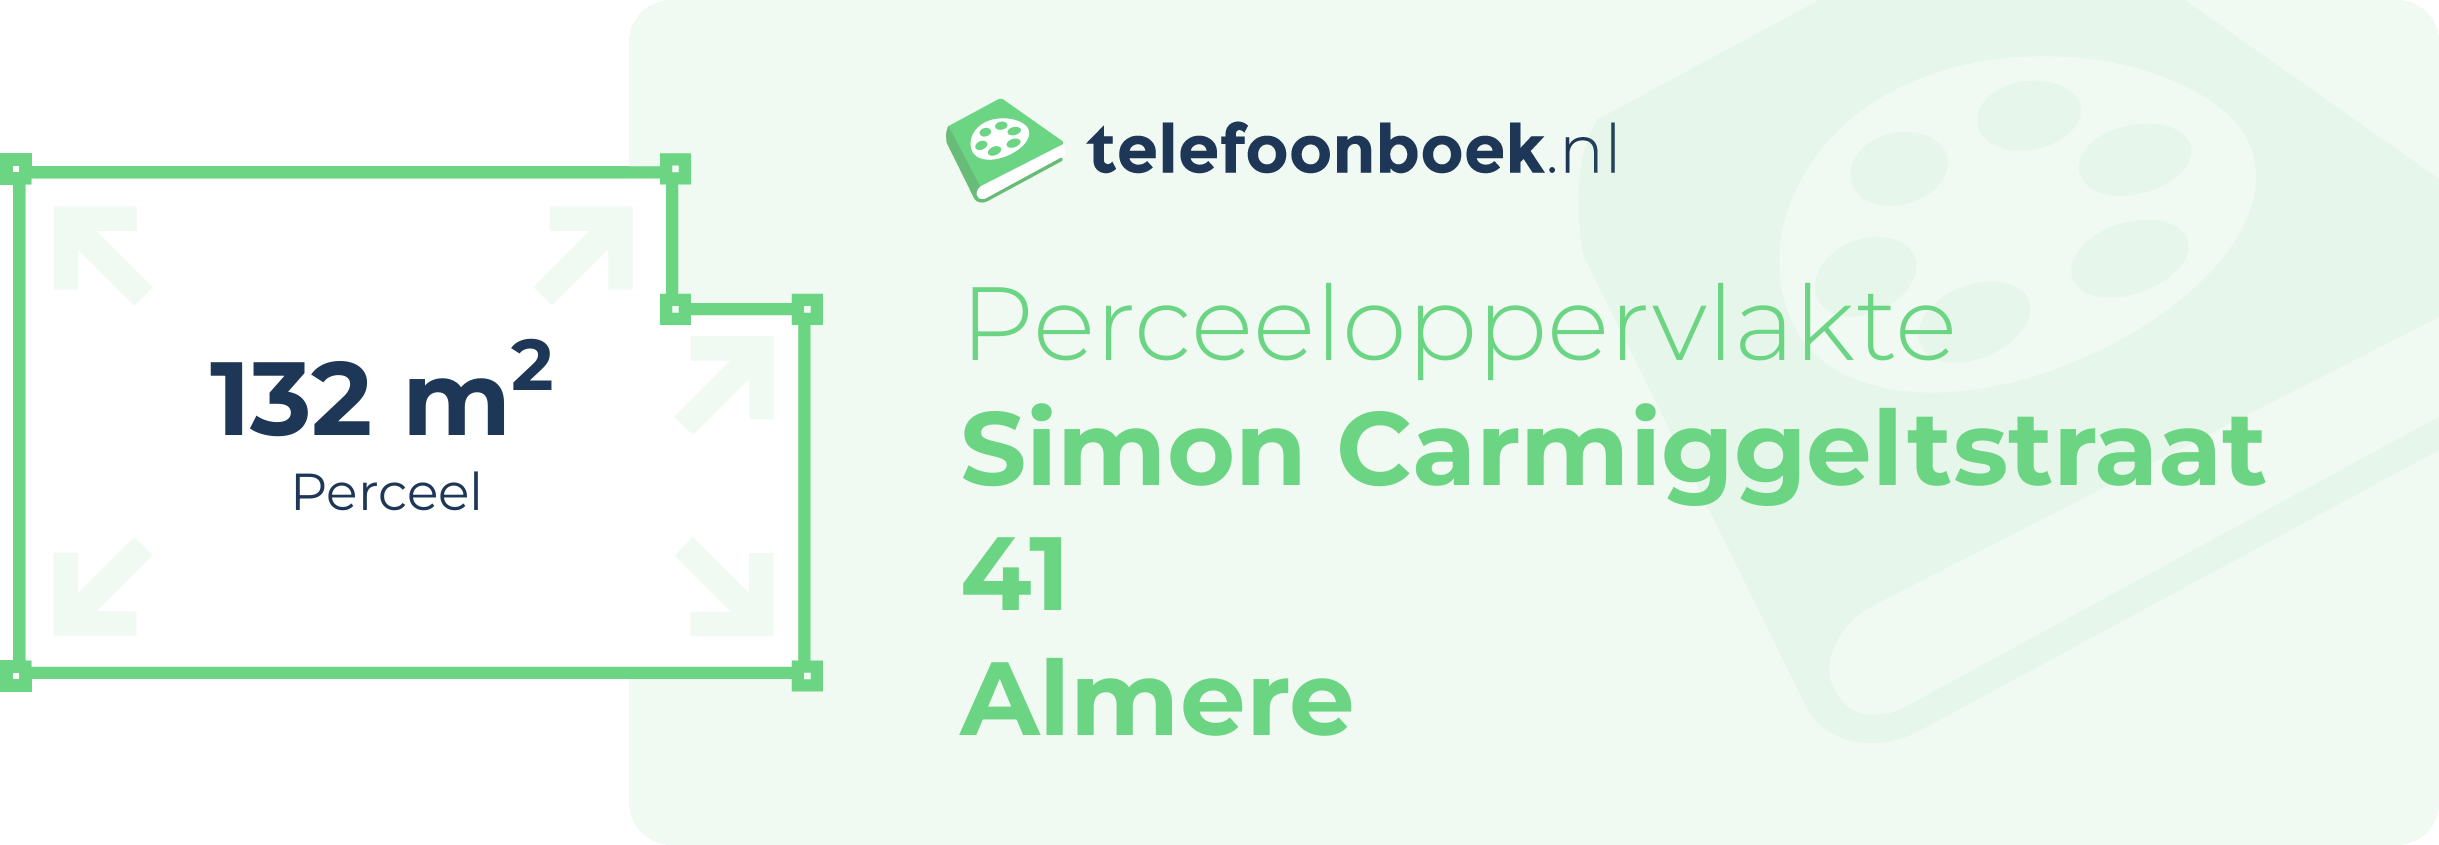 Perceeloppervlakte Simon Carmiggeltstraat 41 Almere